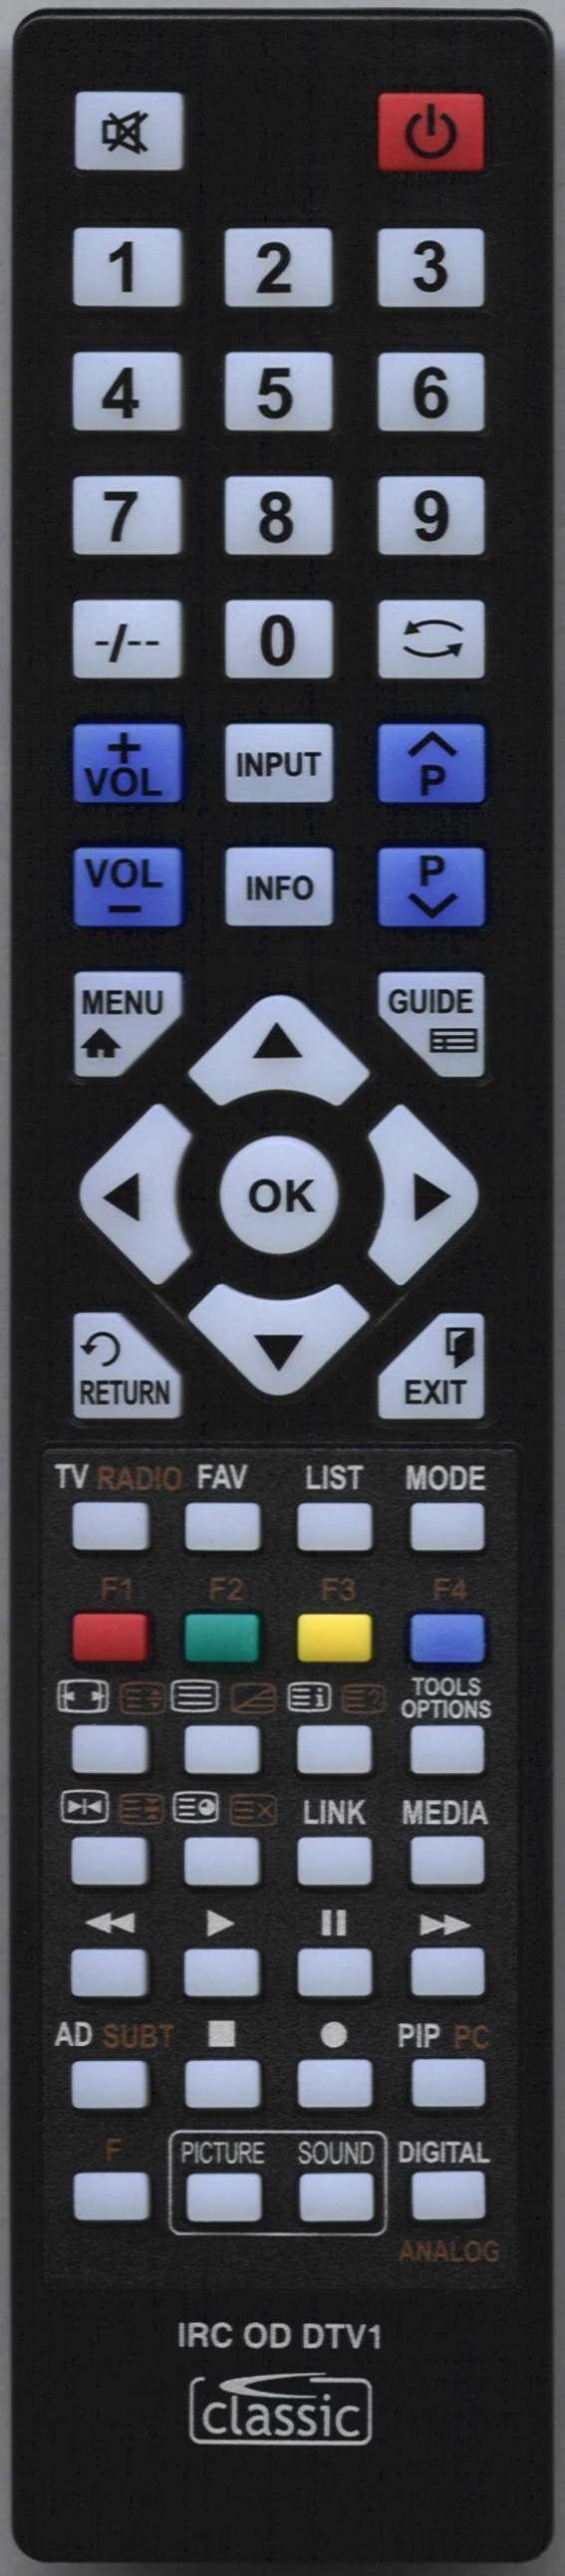 Technika LCD24-641 Remote Control